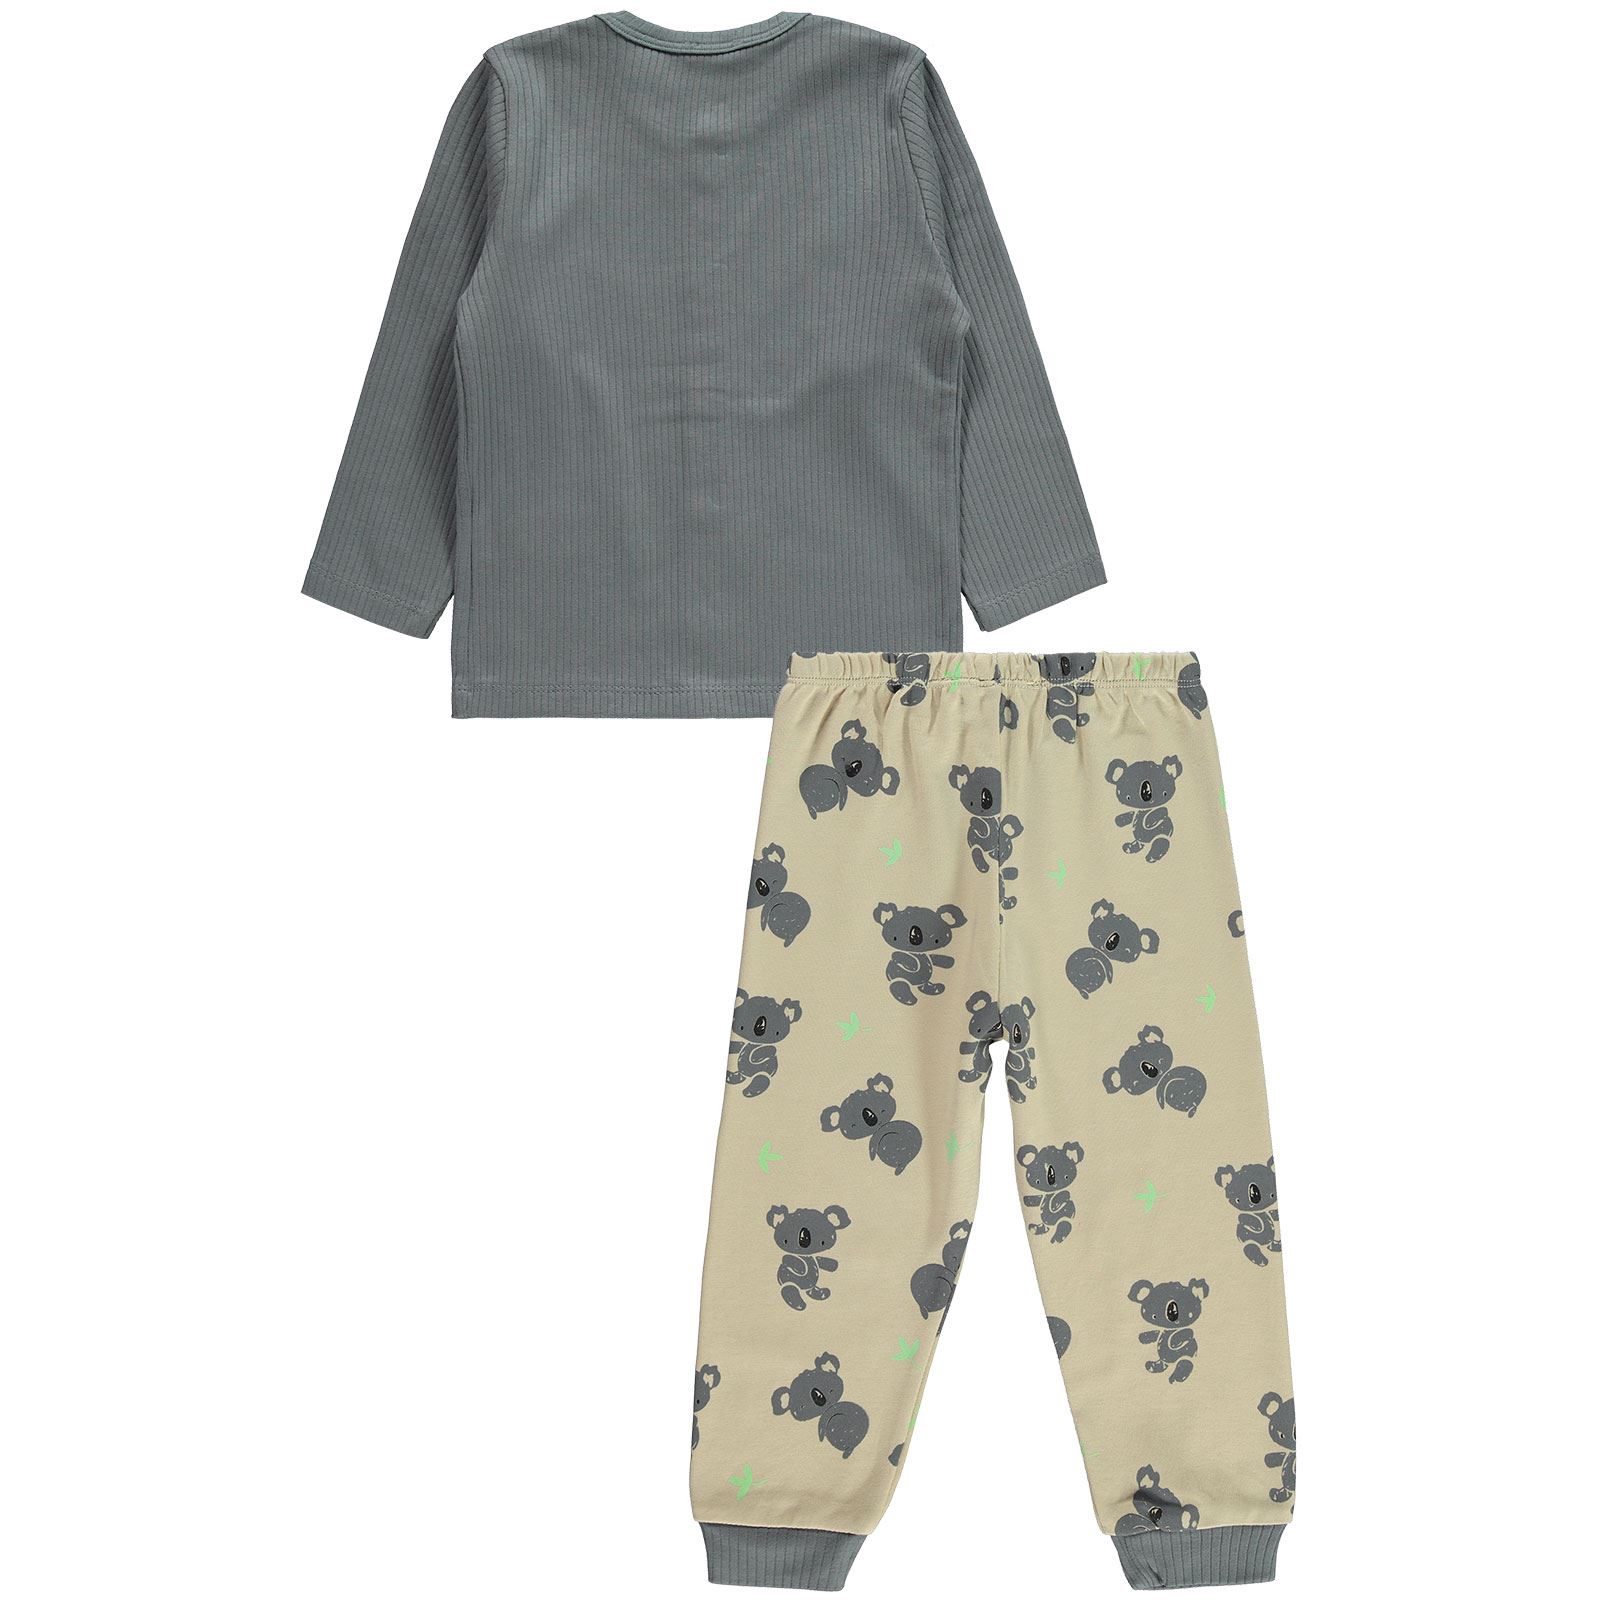 Civil Boys Erkek Çocuk Pijama Takımı 2-5 Yaş Gri